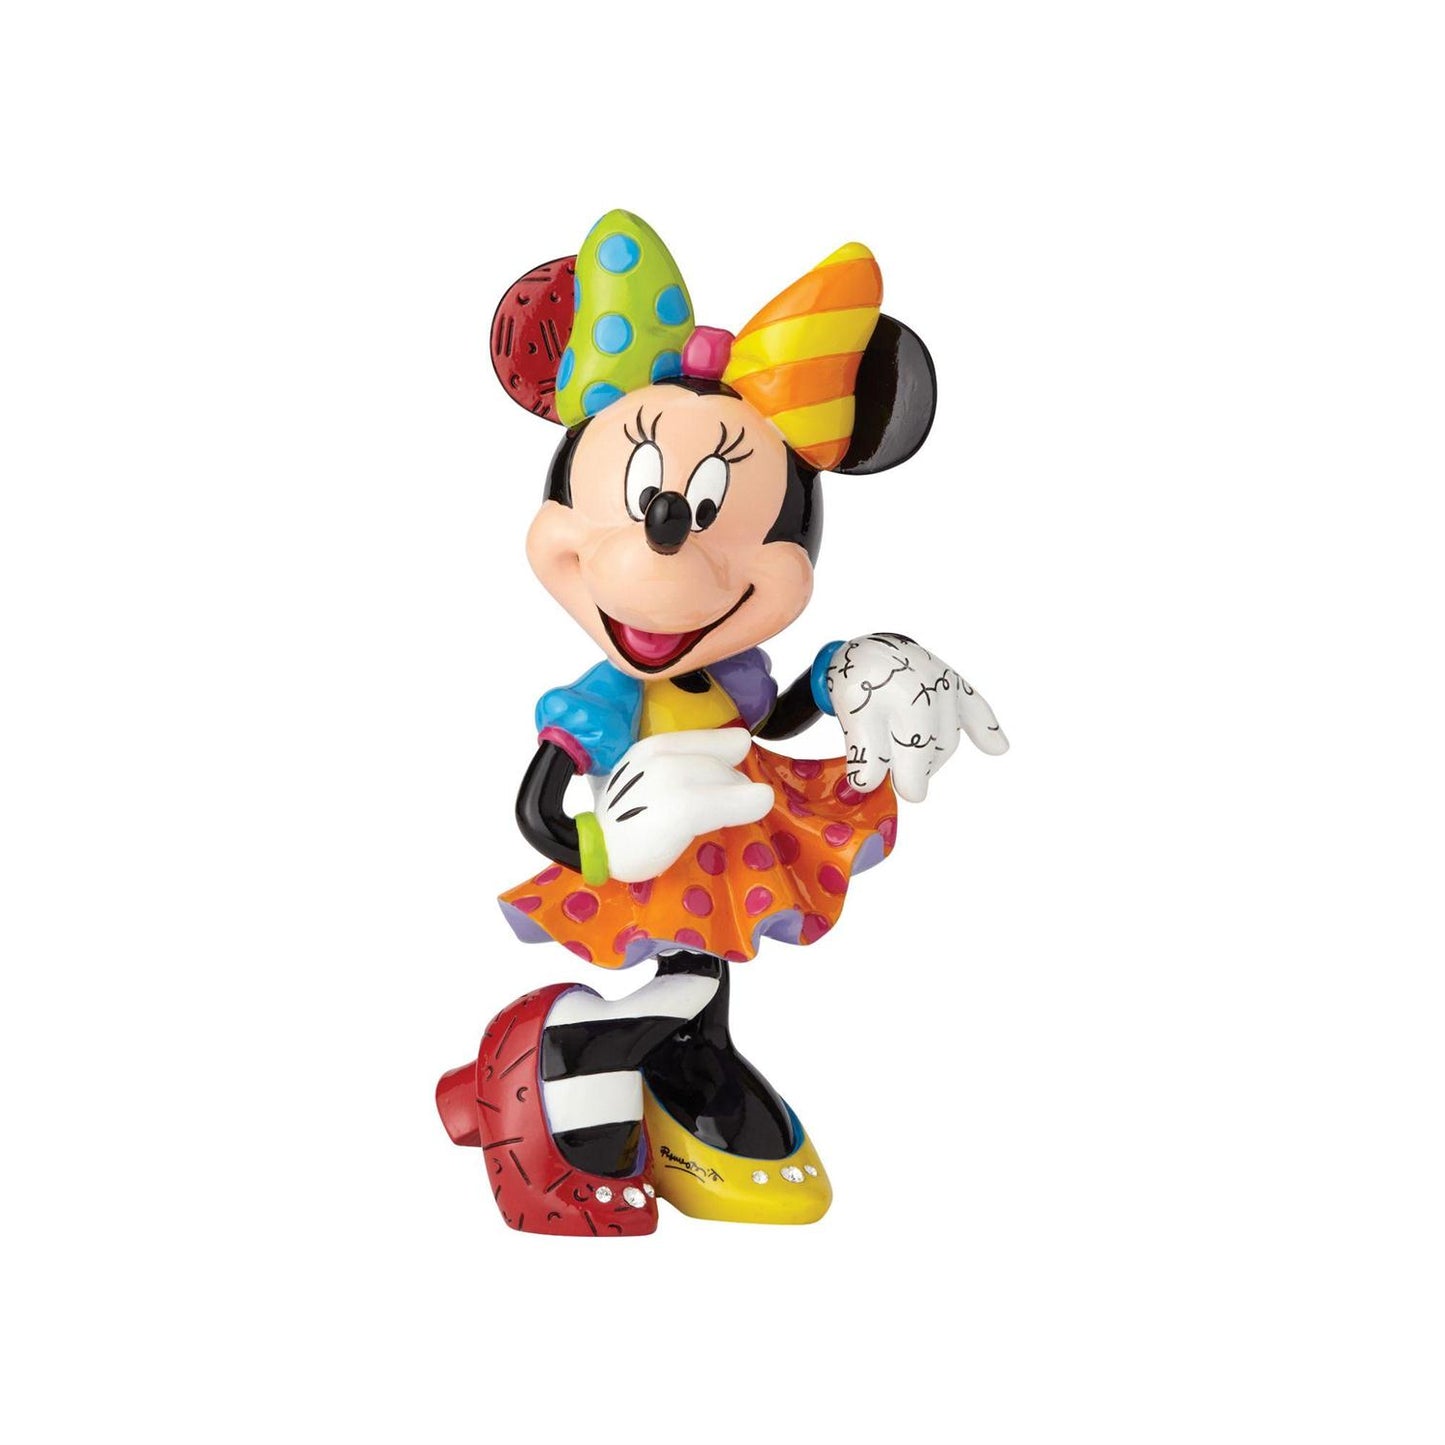 Disney Britto Minnie's 90th Anniversary